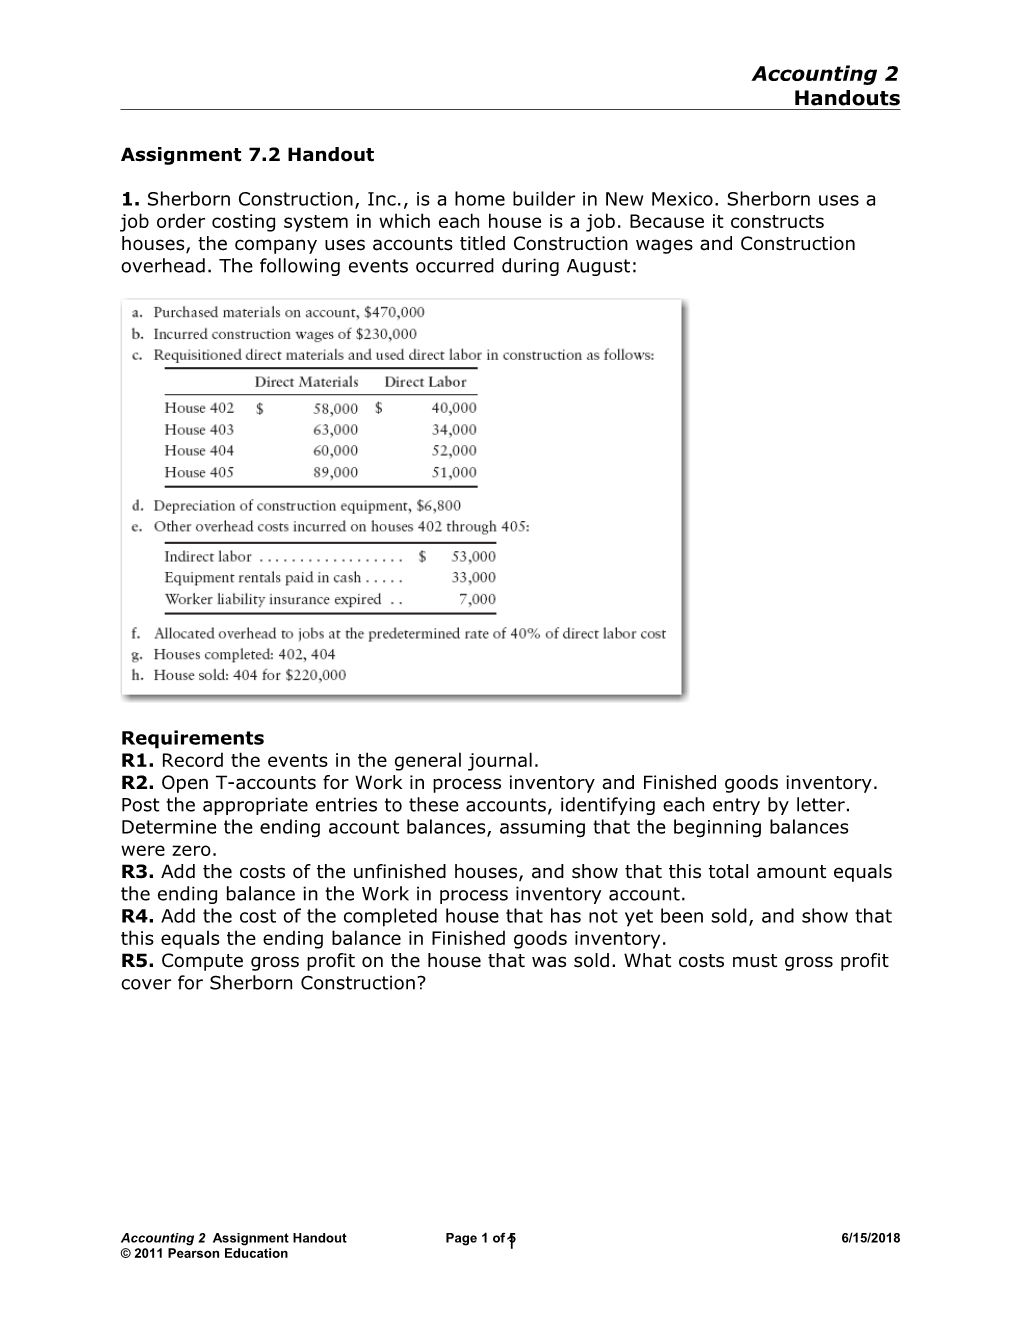 Assignment 7.2 Handout